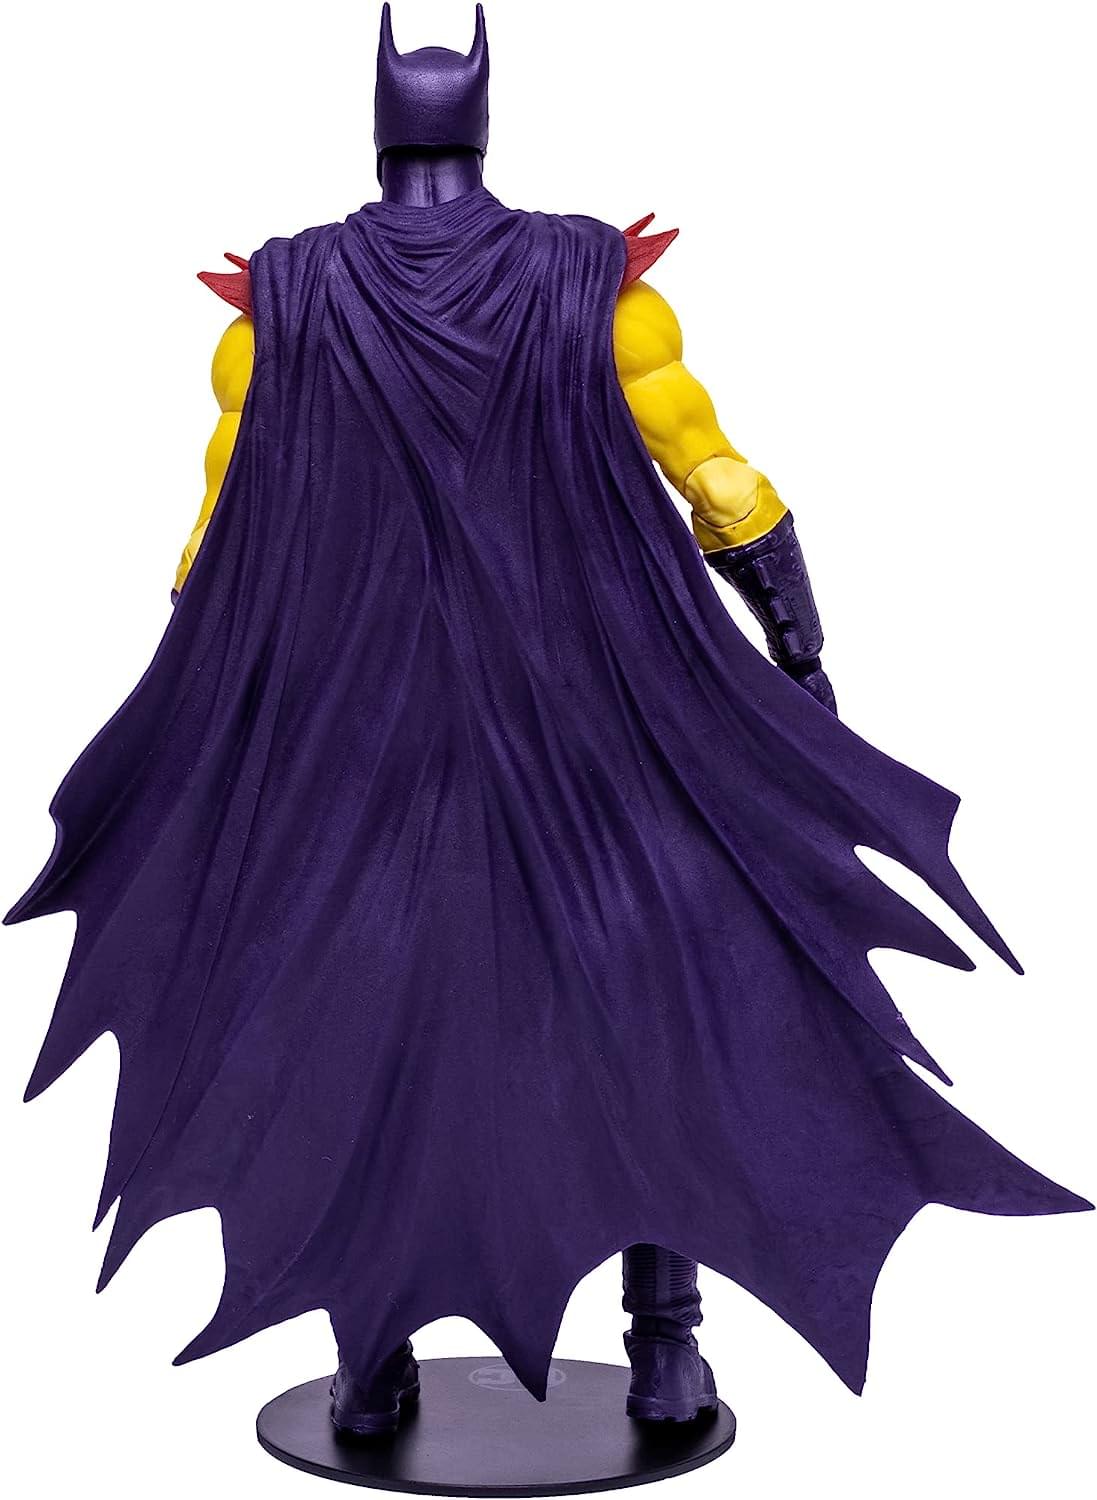 DC Multiverse 7 Inch Action Figure | Batman of Zur-En-Arrh